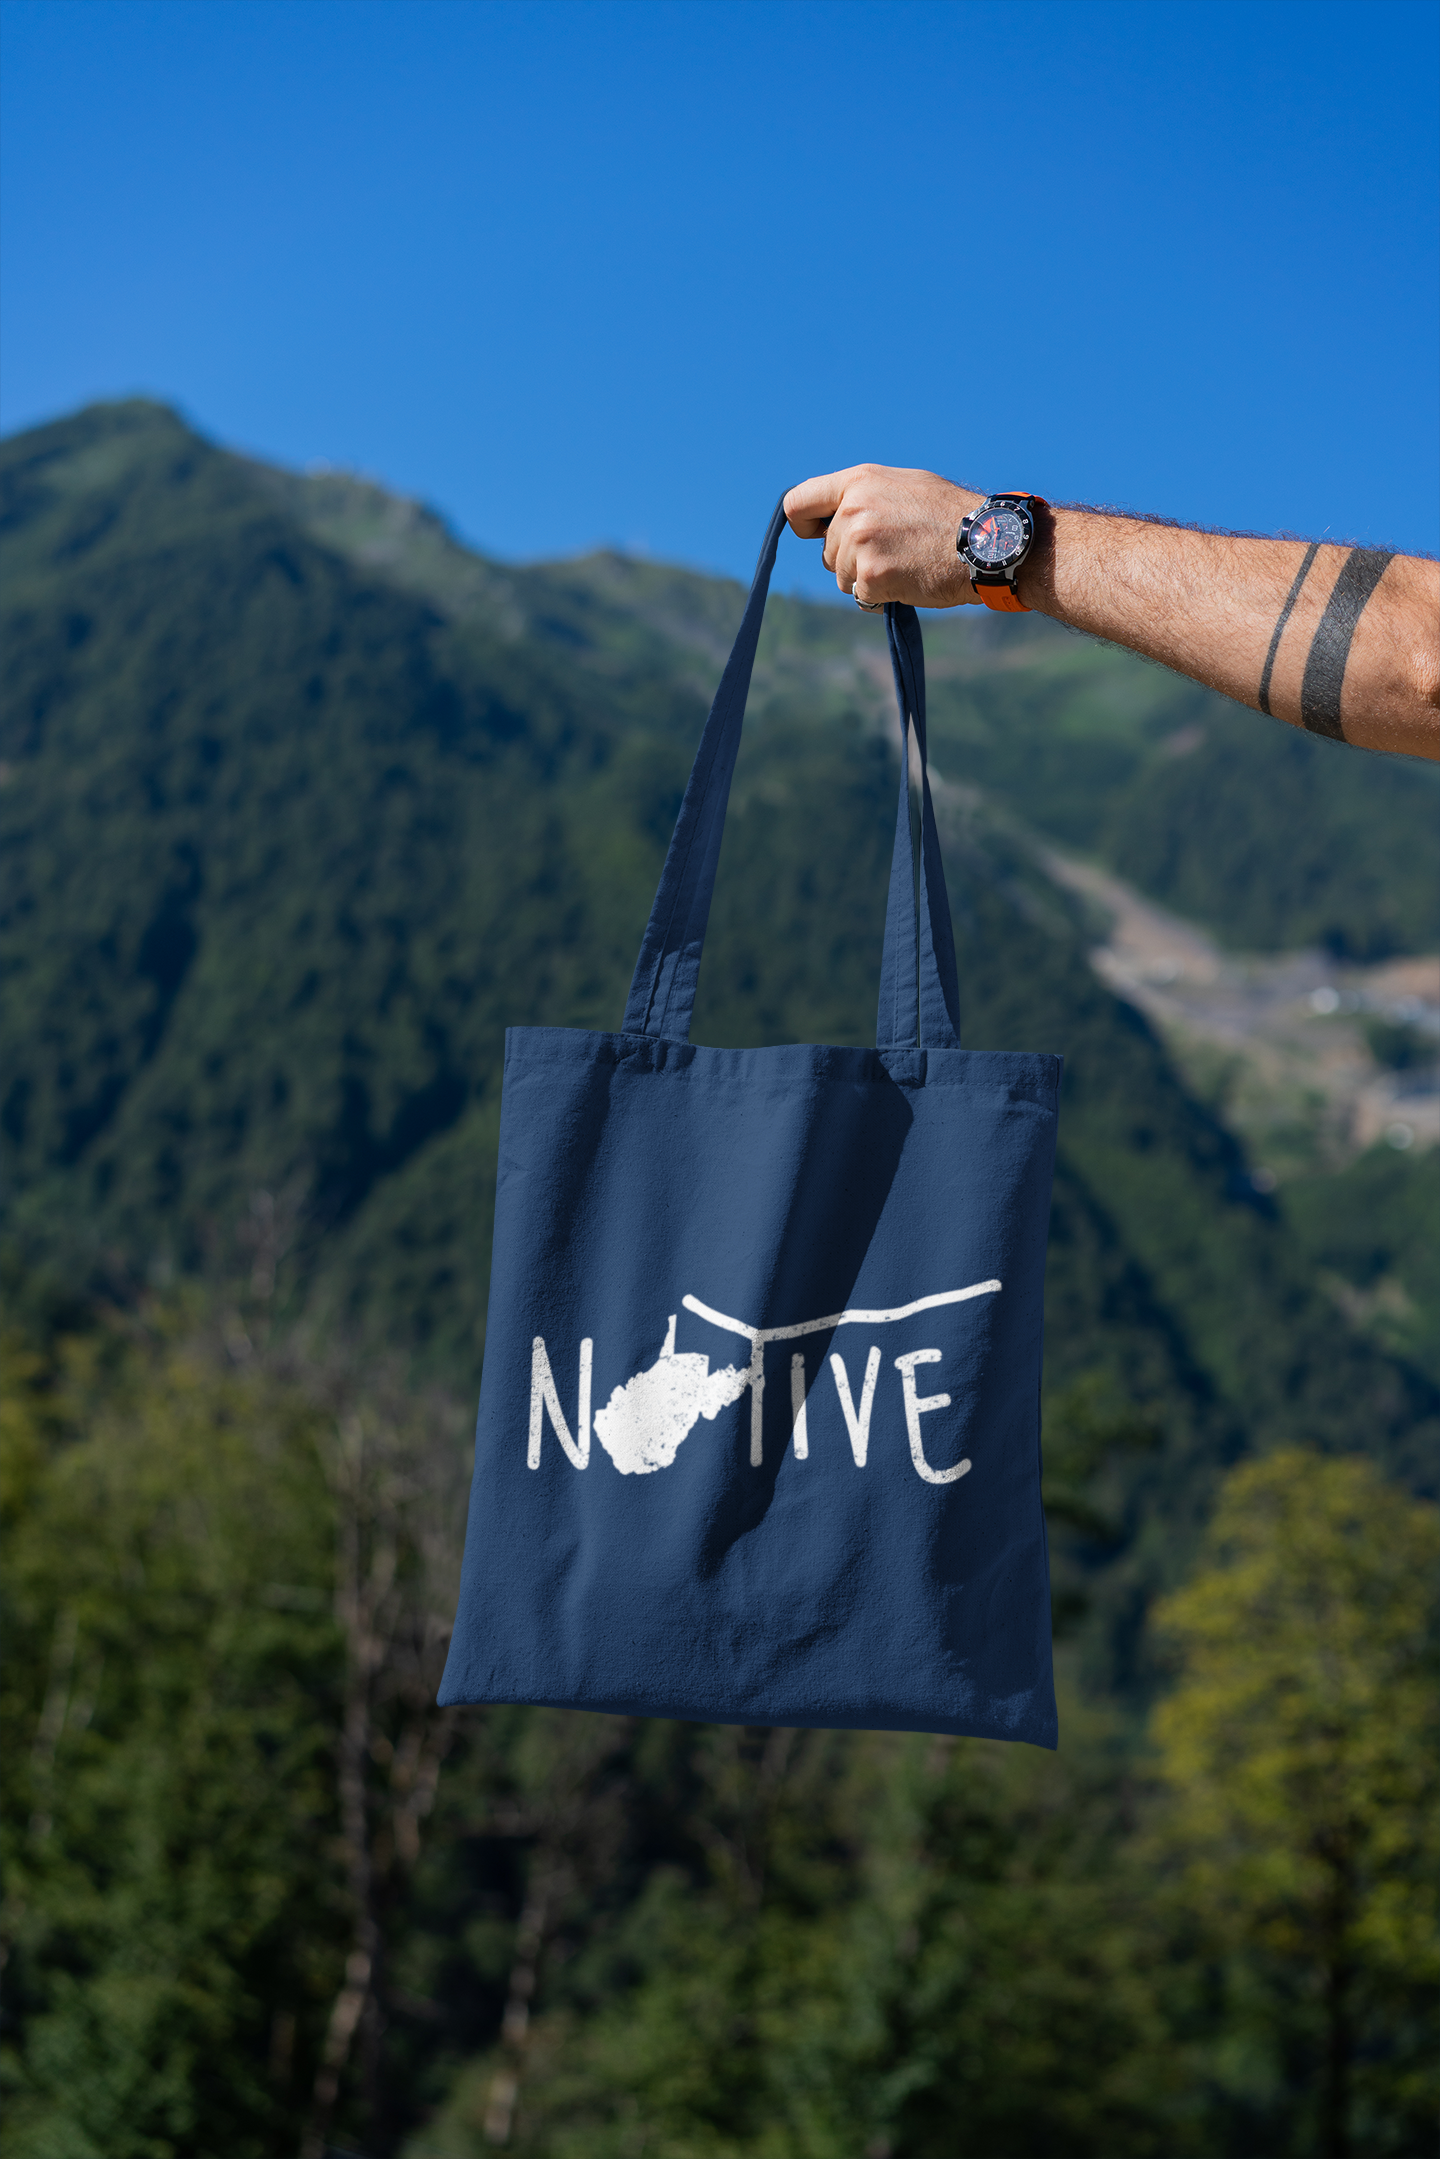 Native WV Tote Bag